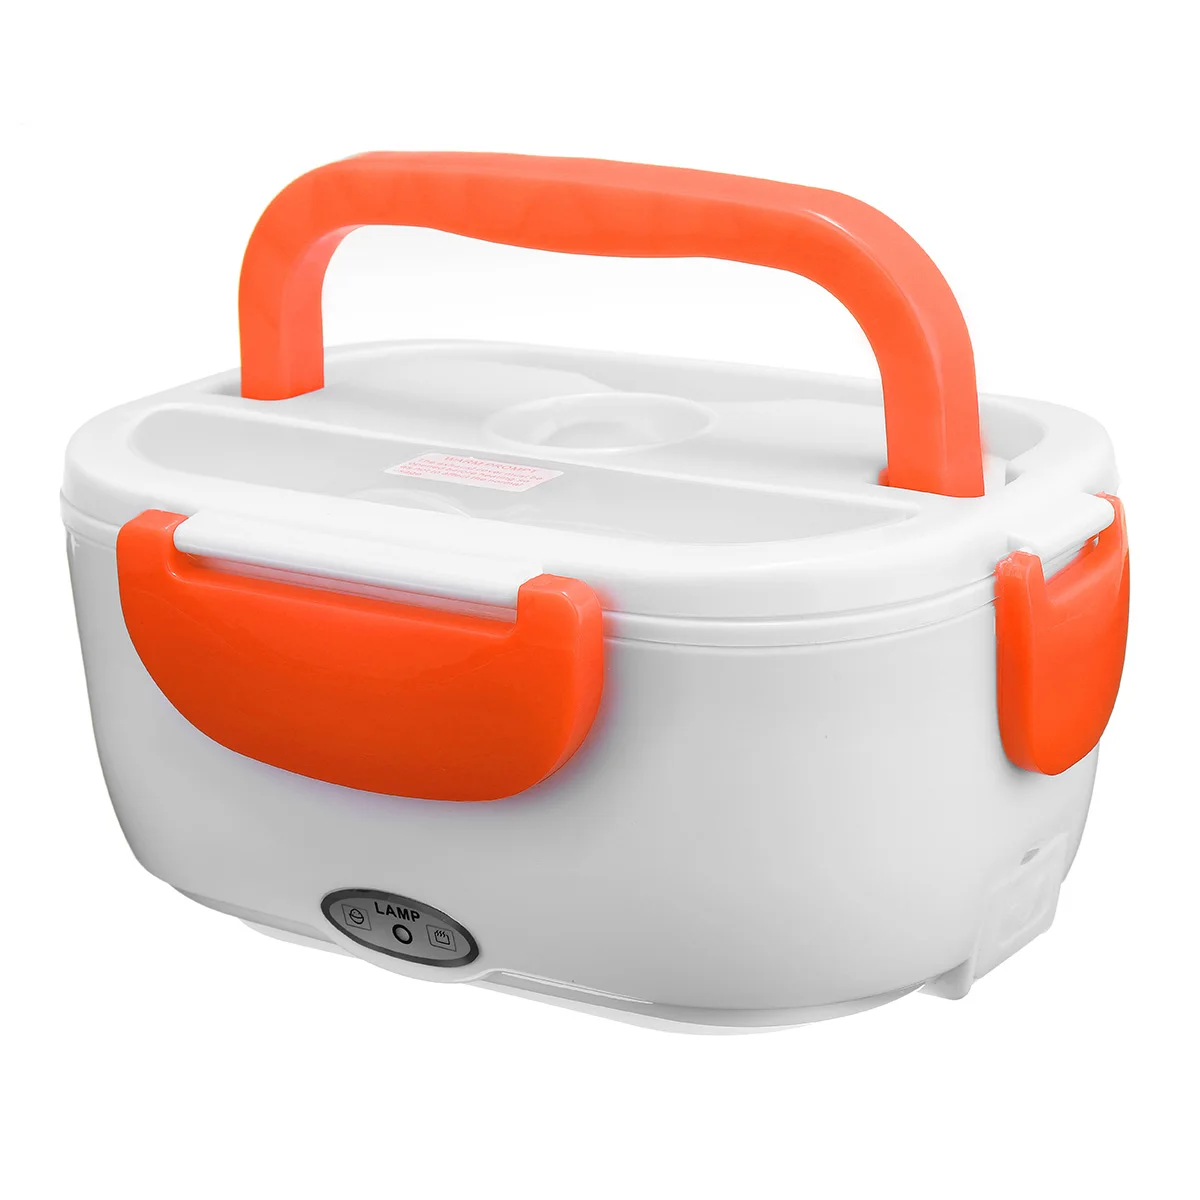 12 V-24 V Авто Портативный с электрическим подогревом отопление Коробки для обедов мульти-функциональный Bento Еда контейнер риса грелка для школы и офиса - Цвет: Оранжевый